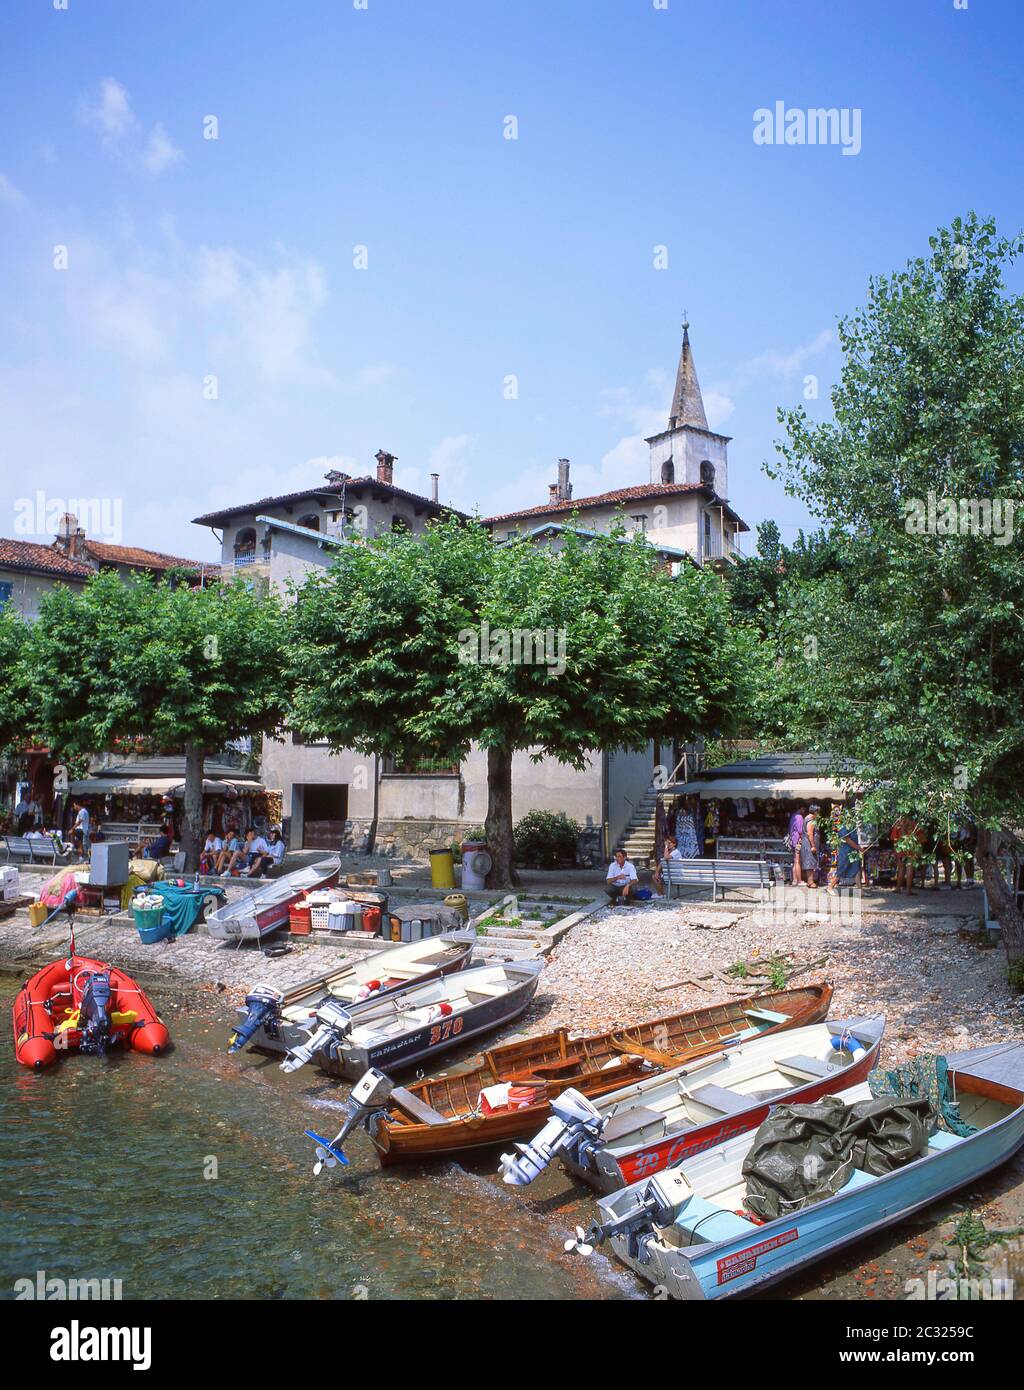 Isloa Pescatori (Fisherman's Island), Lake Maggiore, Province of Verbano-Cusio-Ossola, Piemonte (Piedmont) Region, Italy Stock Photo